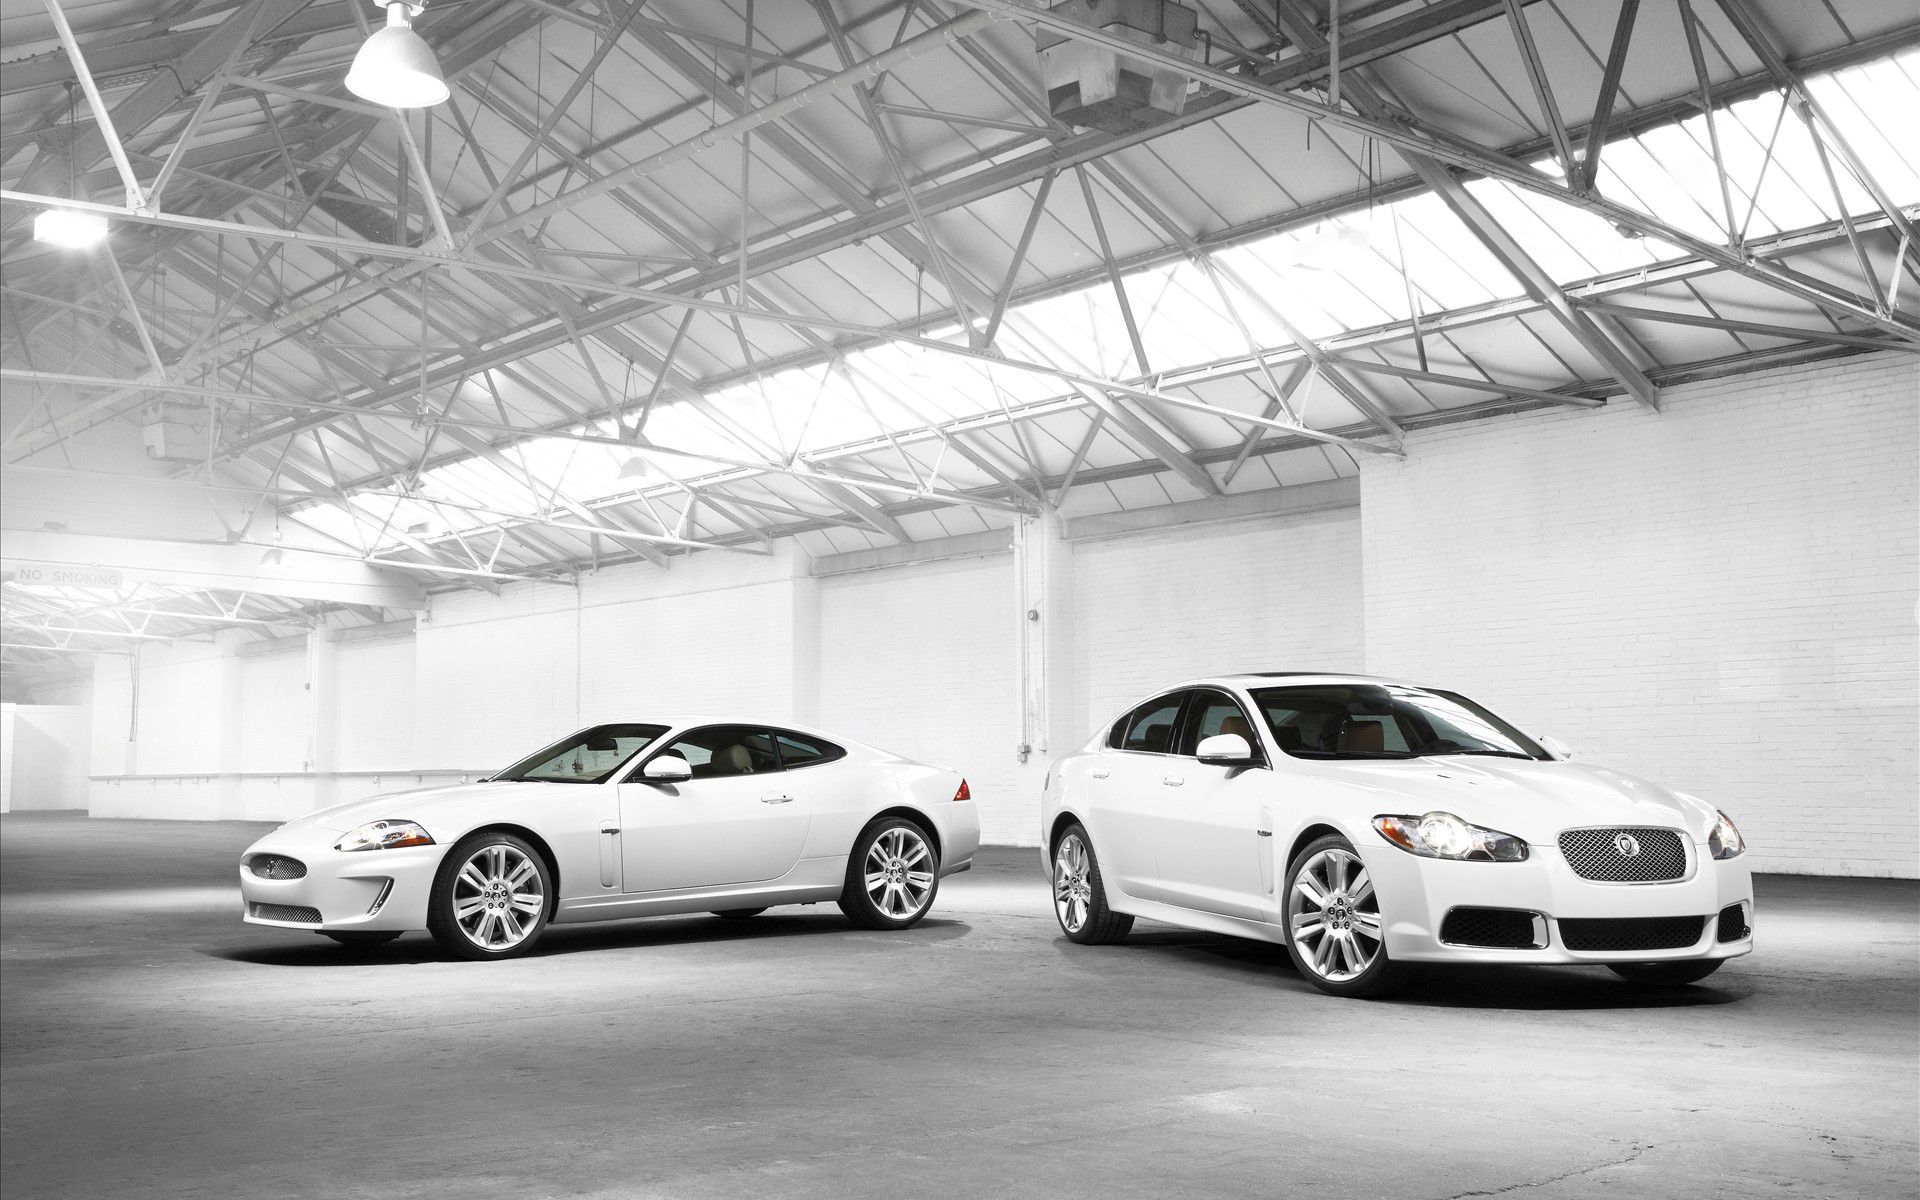 White Jaguar car wallpaper Auto desktop background | Car ...